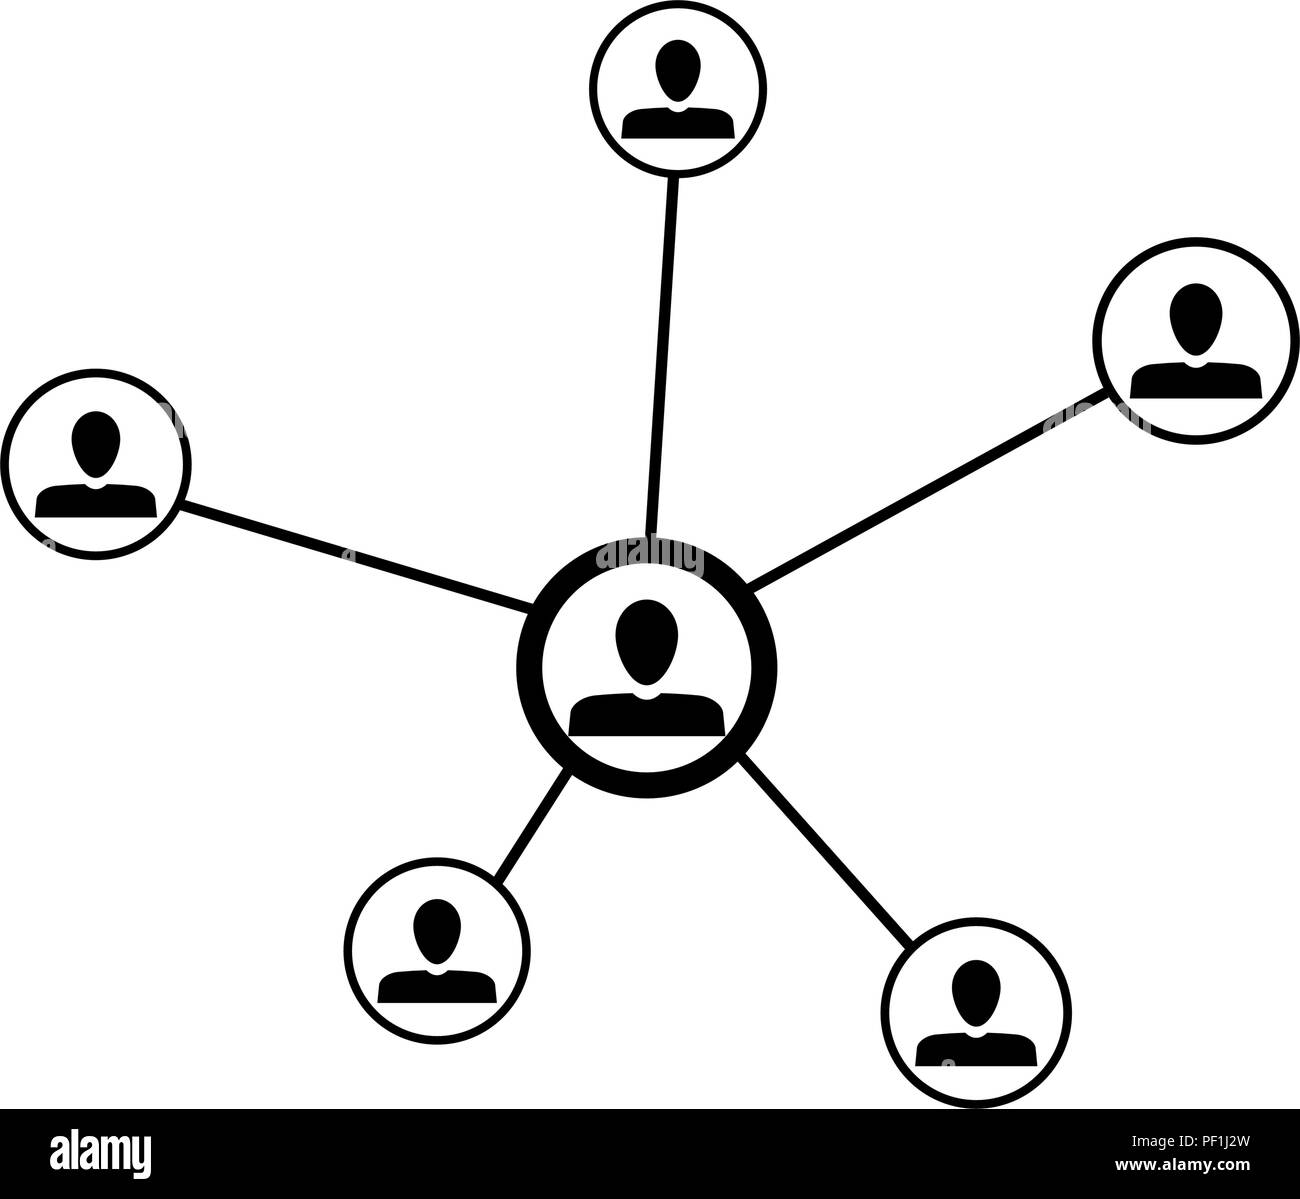 Social Networking für die Kommunikation. Vector Netzwerk Menschen, sozialen Anschluss internet, Team und Teamarbeit Strategie miteinander Abbildung Stock Vektor